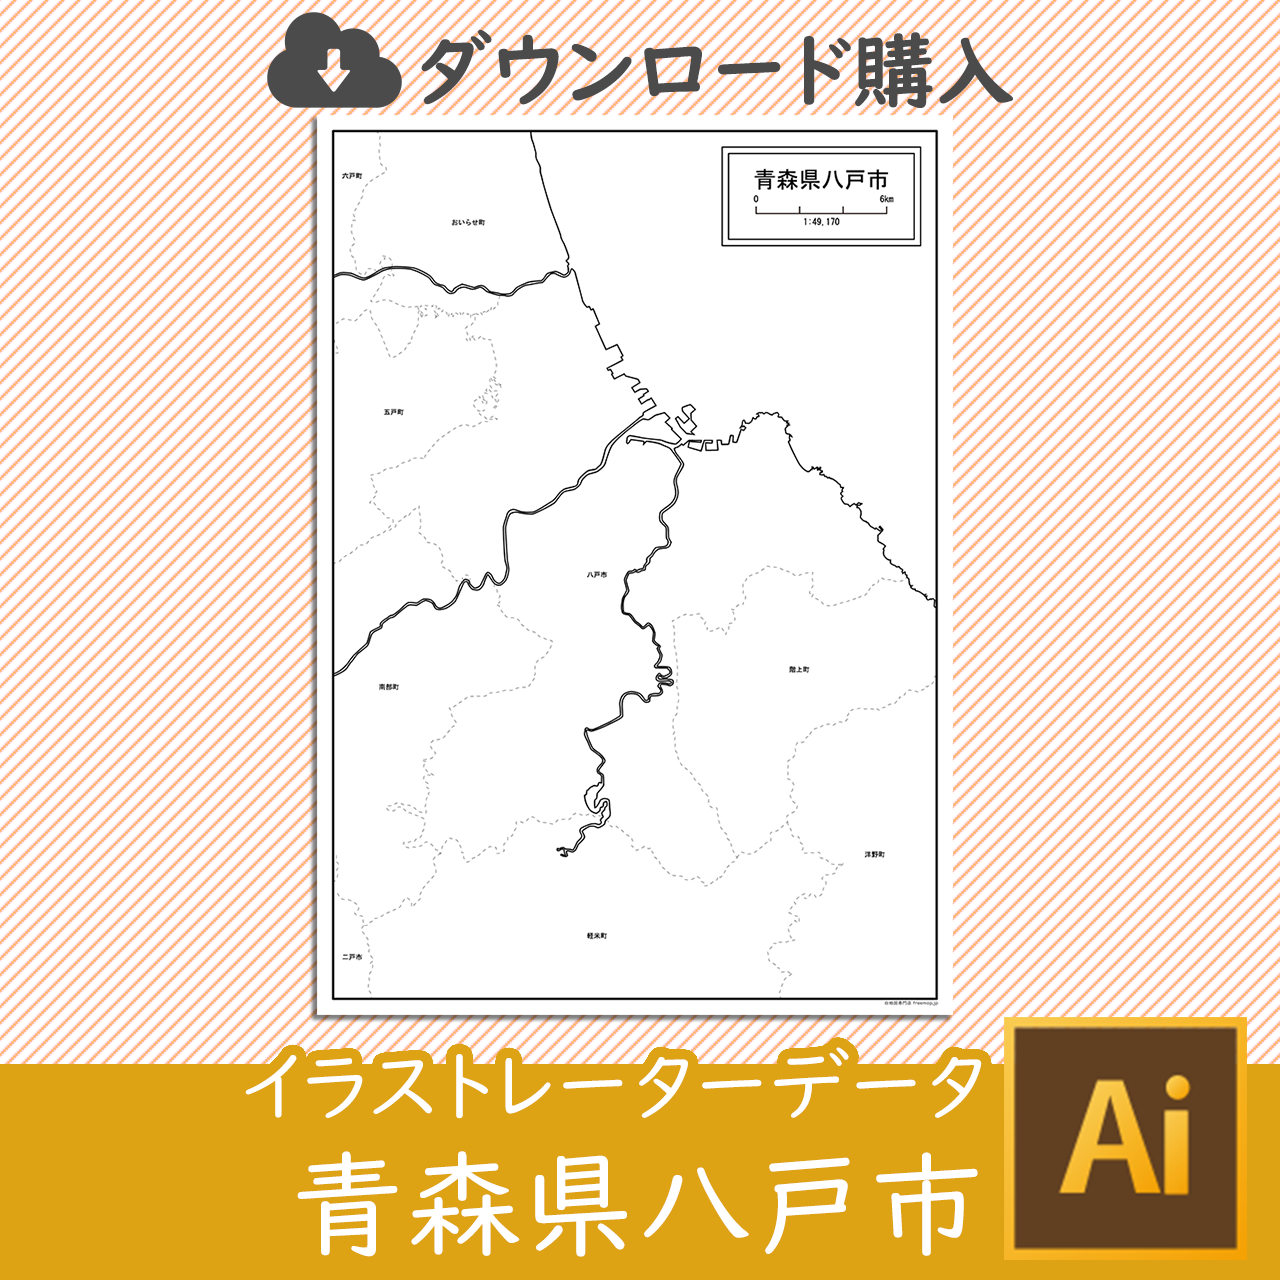 八戸市のaiデータのサムネイル画像